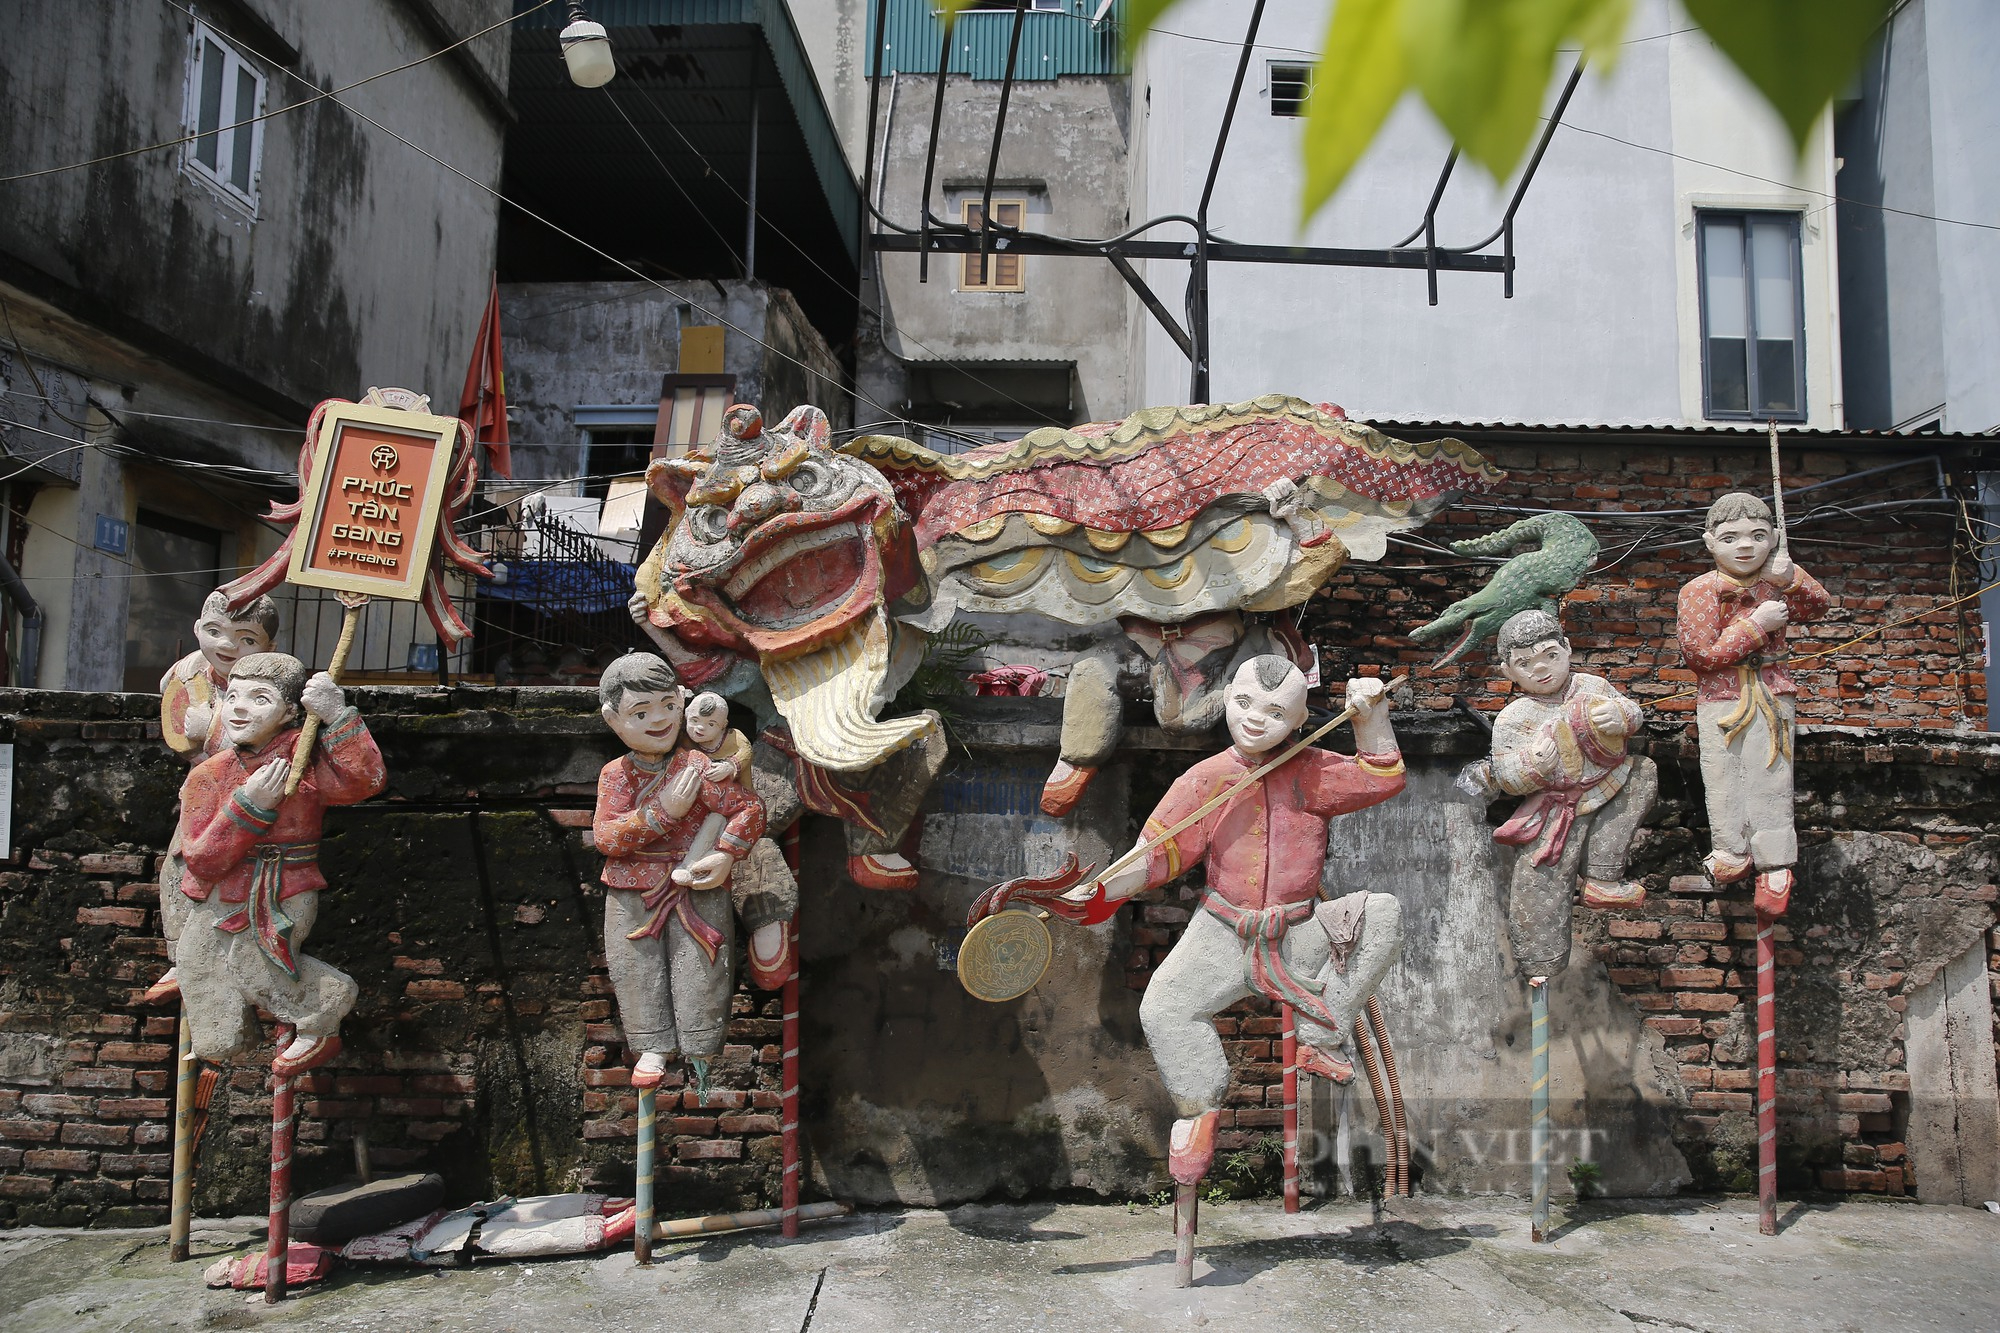 Nhiều không gian văn hóa nghệ thuật tại Hà Nội bị bôi bẩn, xuống cấp nghiêm trọng - Ảnh 5.